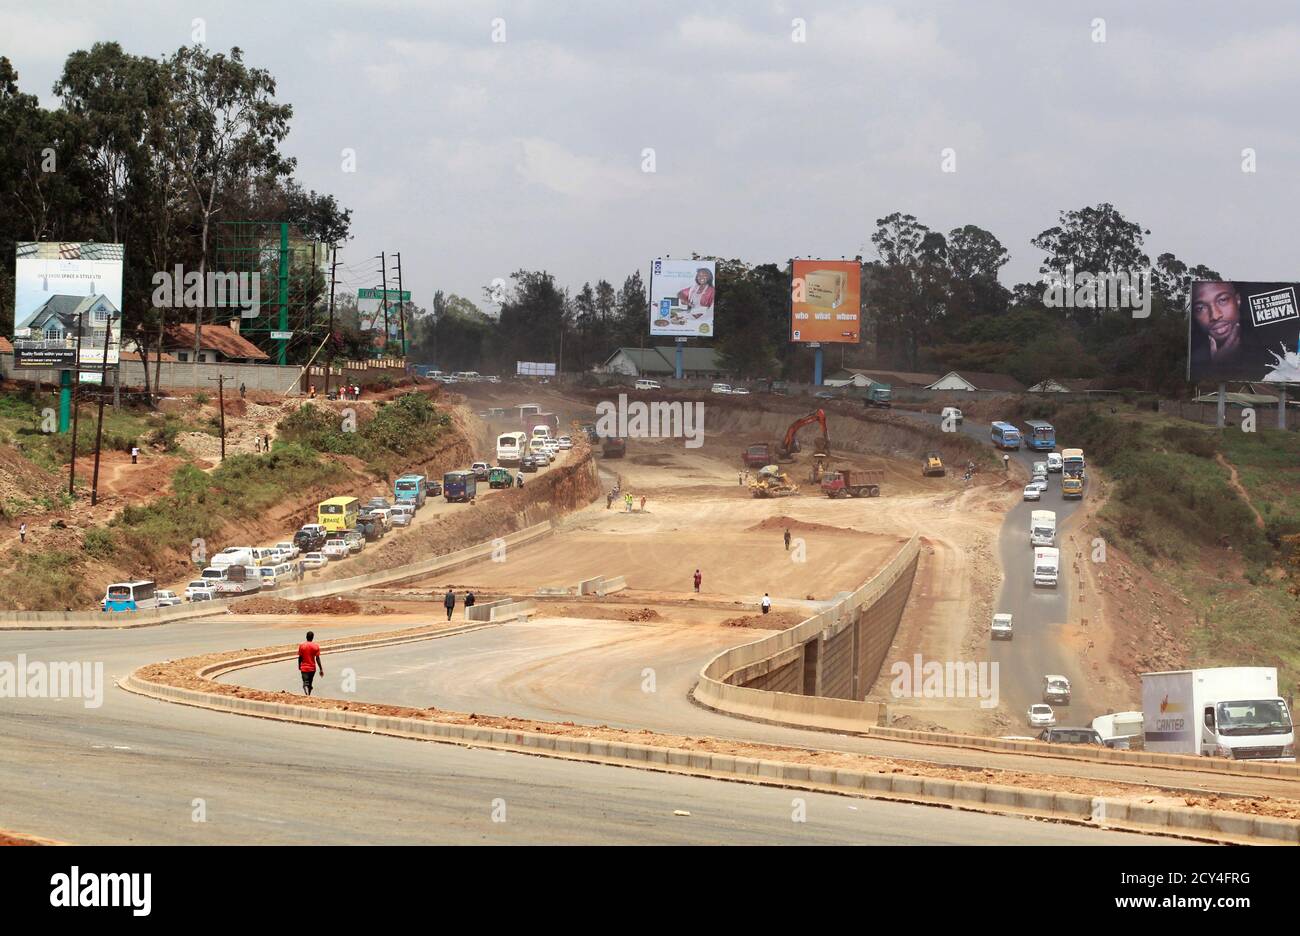 El tráfico fluye a lo largo del proyecto de la carretera Nairobi-Thika, en construcción cerca de la capital de Kenia, Nairobi, 23 de septiembre de 2011. La carretera, que está siendo construida por China Wuyi, Sinohydro y Shengeli Engineering Construction Group, está financiada por el gobierno keniano y chino y el Banco Africano de Desarrollo (BAFD). El proyecto costará 28 millones de chelines kenianos (330millones de dólares), según la empresa China. El BAfD ha reducido la tasa de crecimiento económico prevista para Kenya en 2011 a 3.5-4.5% de un pronóstico anterior de 4.5-5% debido a la alta inflación y a un tipo de cambio volátil, el del banco Foto de stock